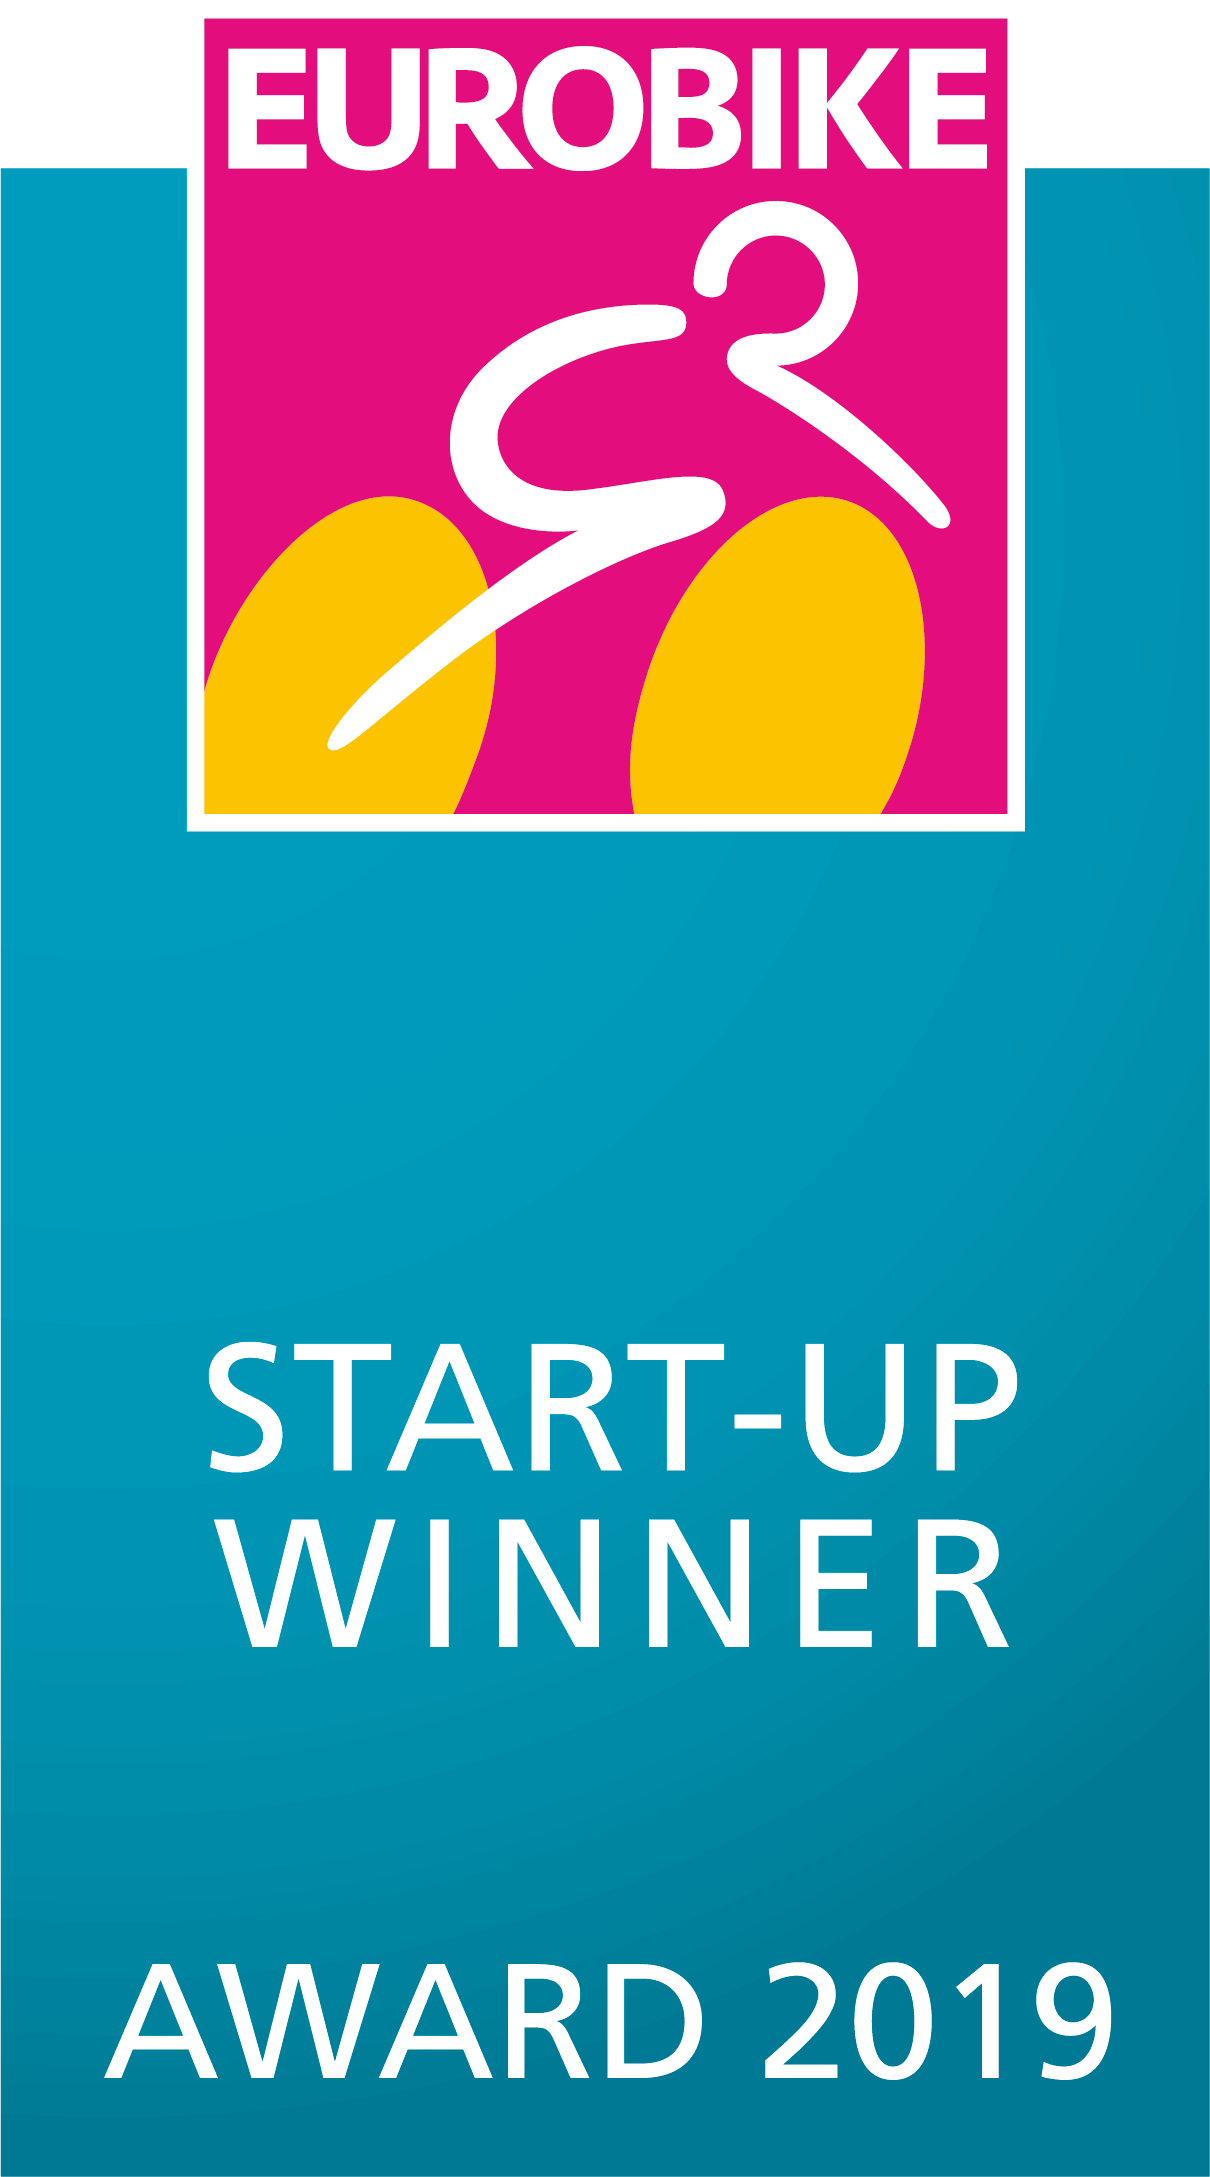 Eurobike start-up winner award